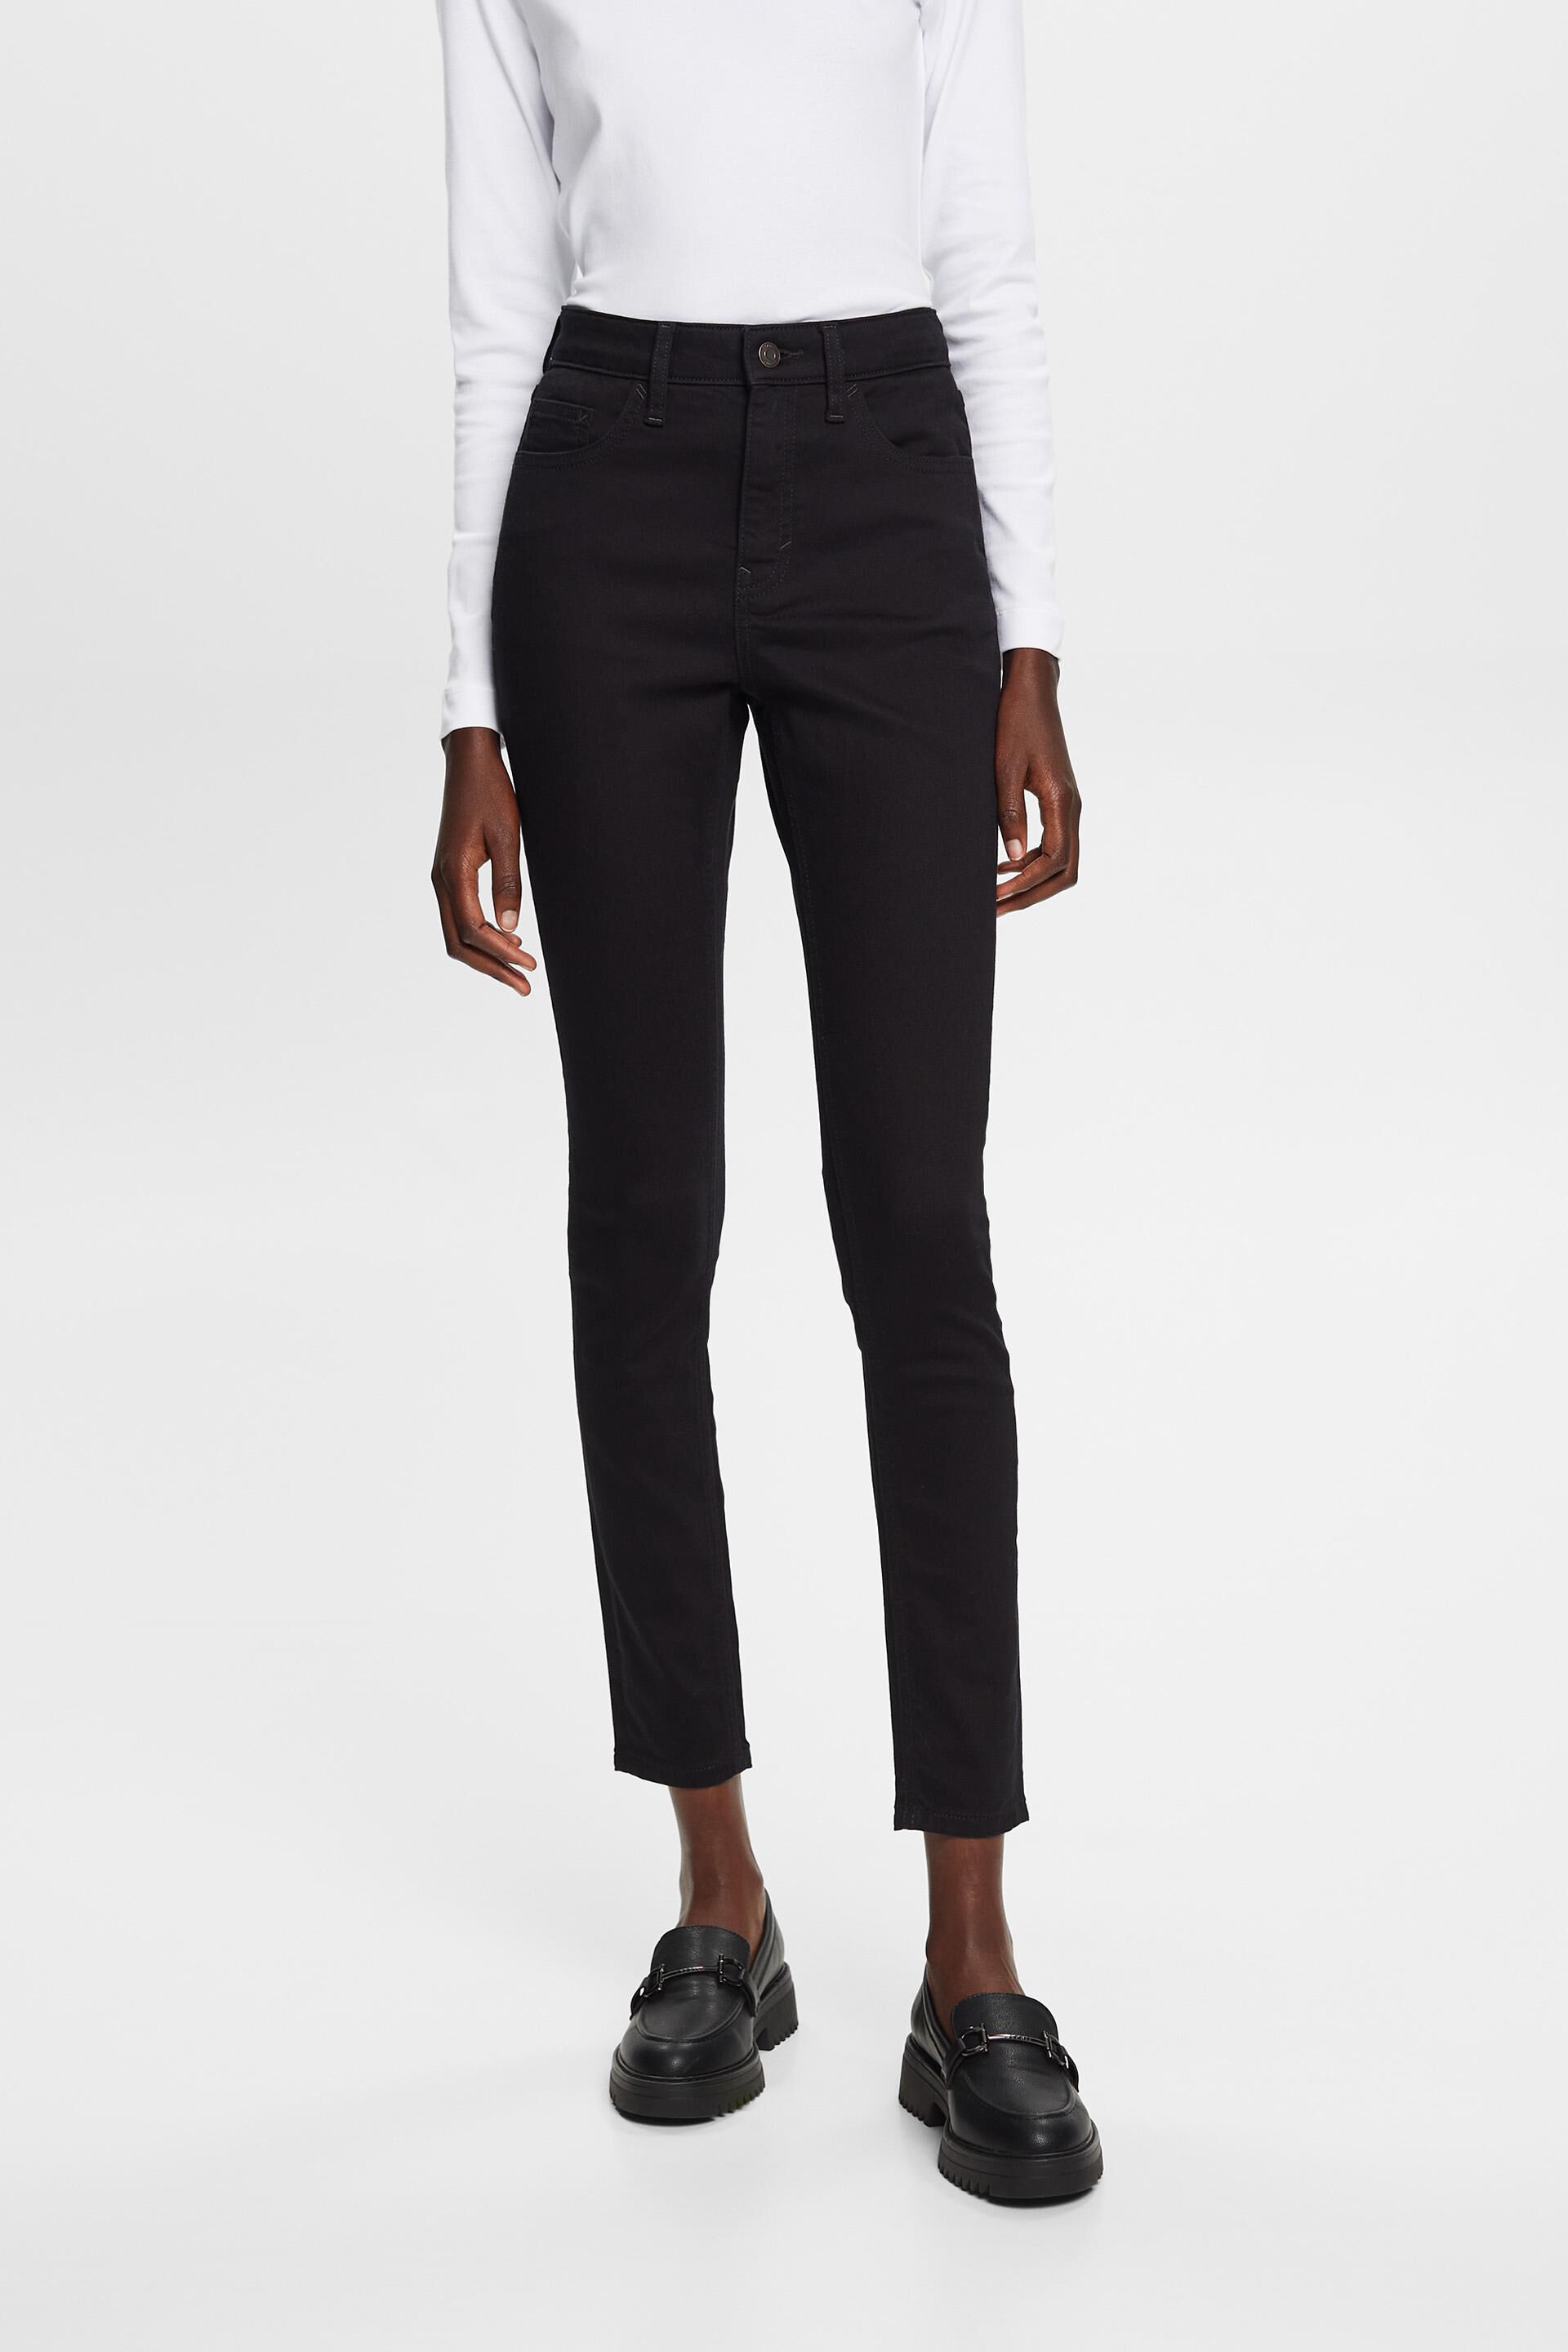 Esprit Damen Non-fade skinny jeans, stretch cotton